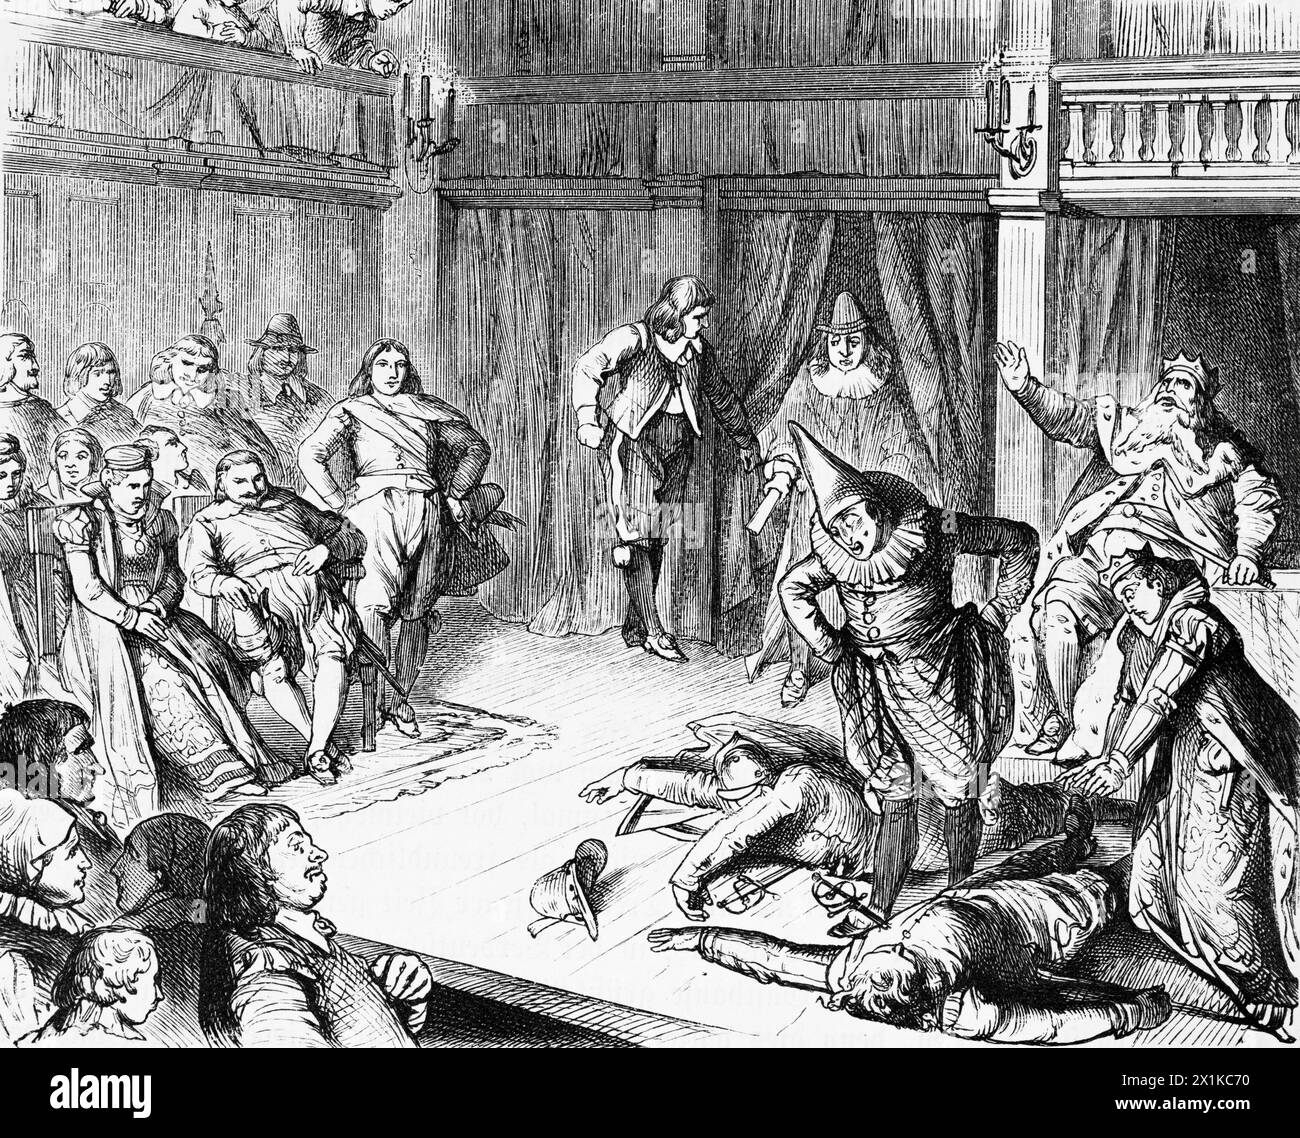 Spettacolo teatrale di una commedia alla corte dell'elettore Sigismondo intorno al 1600, illustrazione storica 1880 Foto Stock